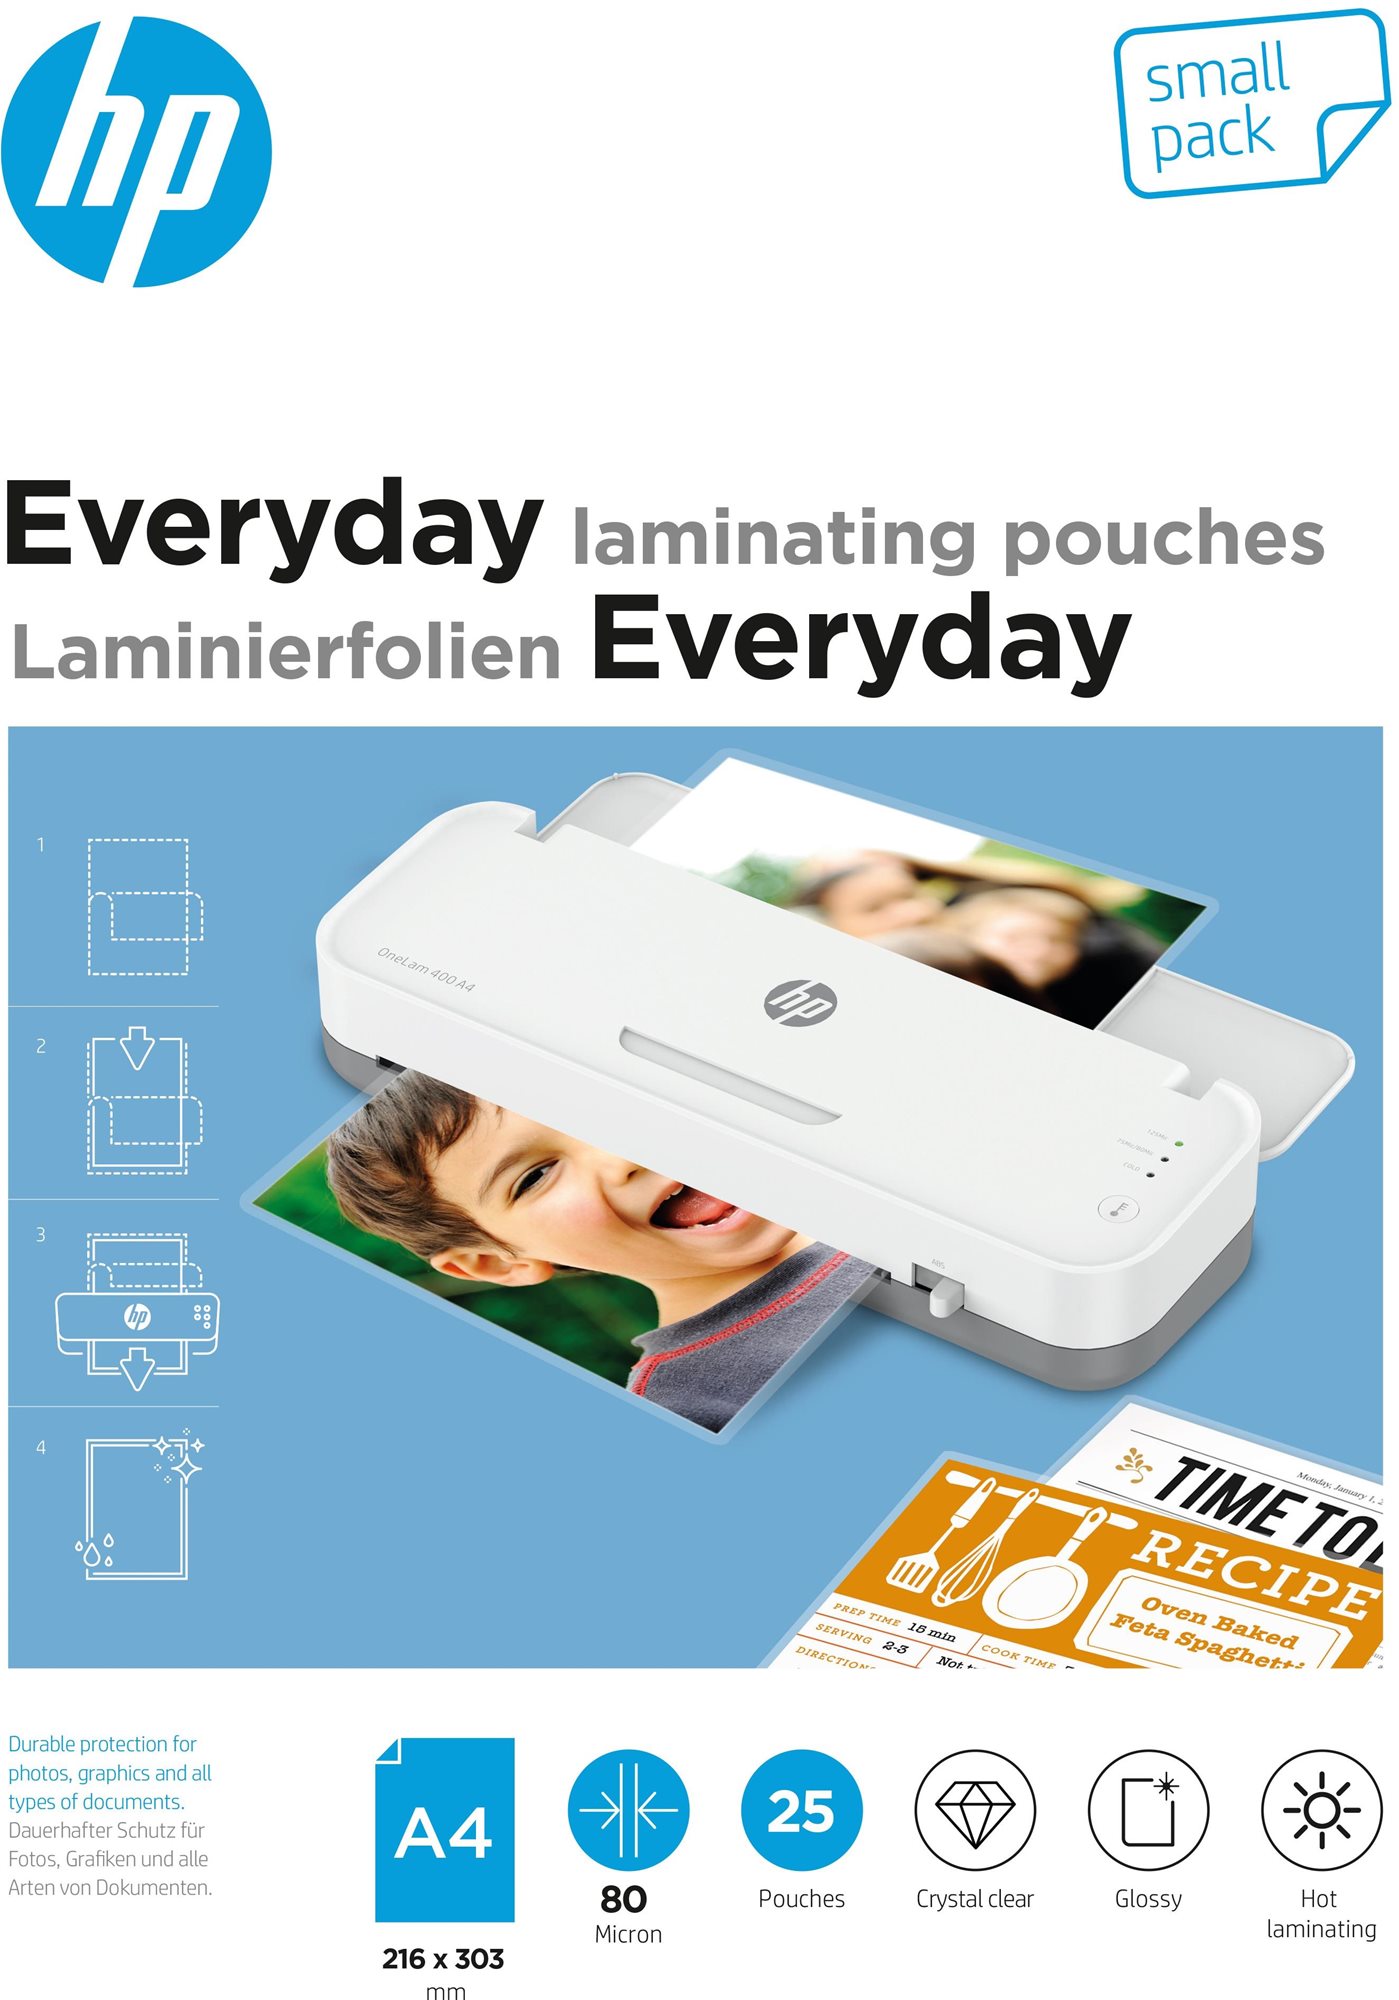 Lamináló fólia HP Everyday A4 80 Micron Small Pack